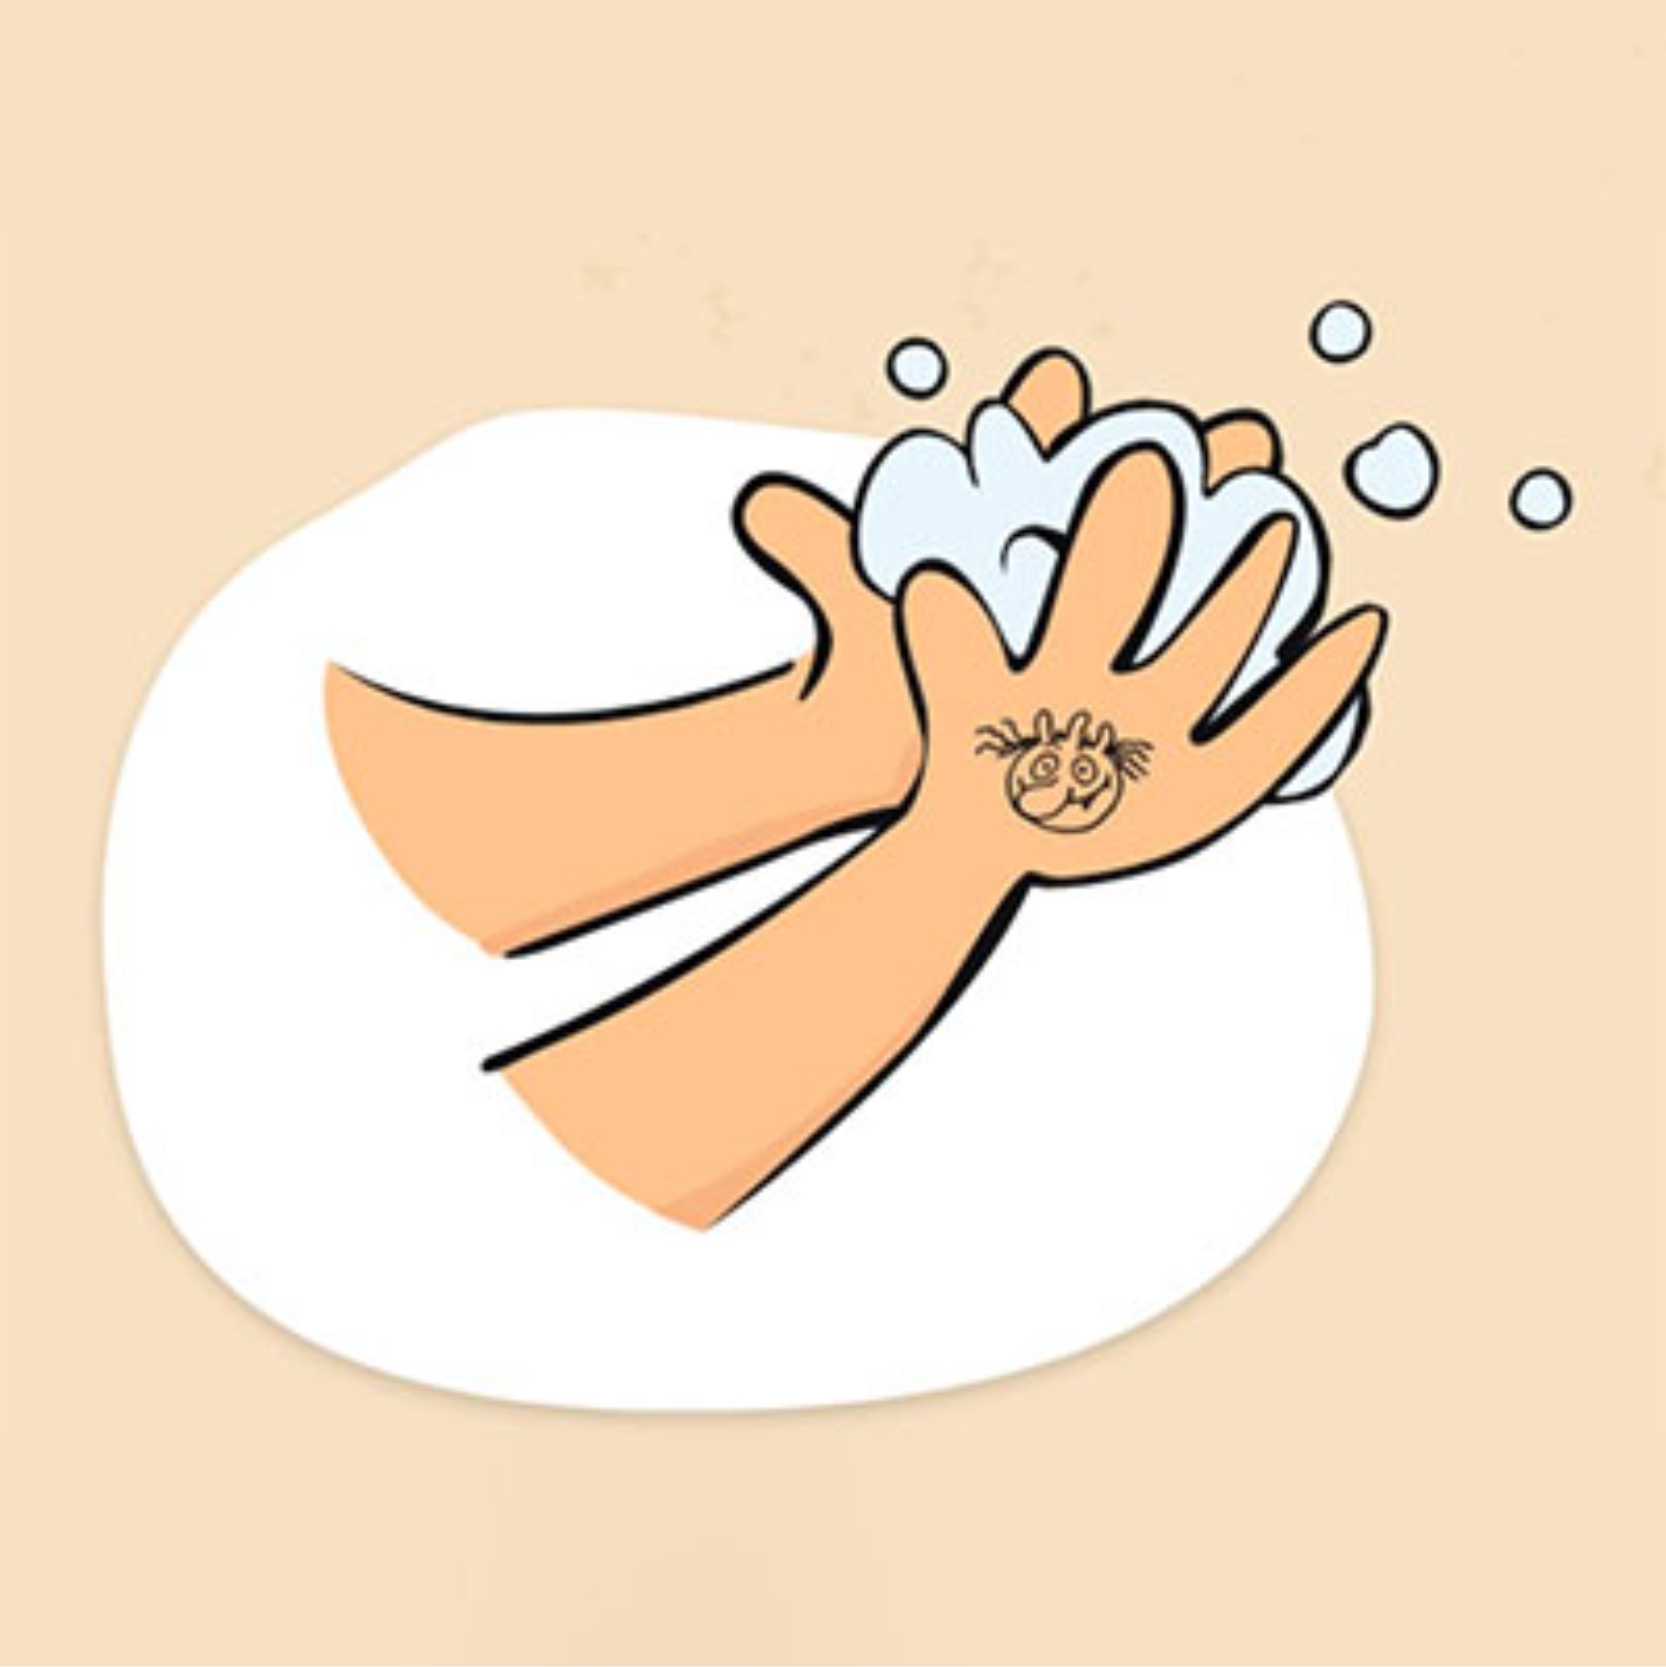 Morgens wird der Olchi auf di​e Hand gestempelt. Im Laufe des Tages werden die Hände gründlich gewaschen bis der Olchi verschwunden ist.